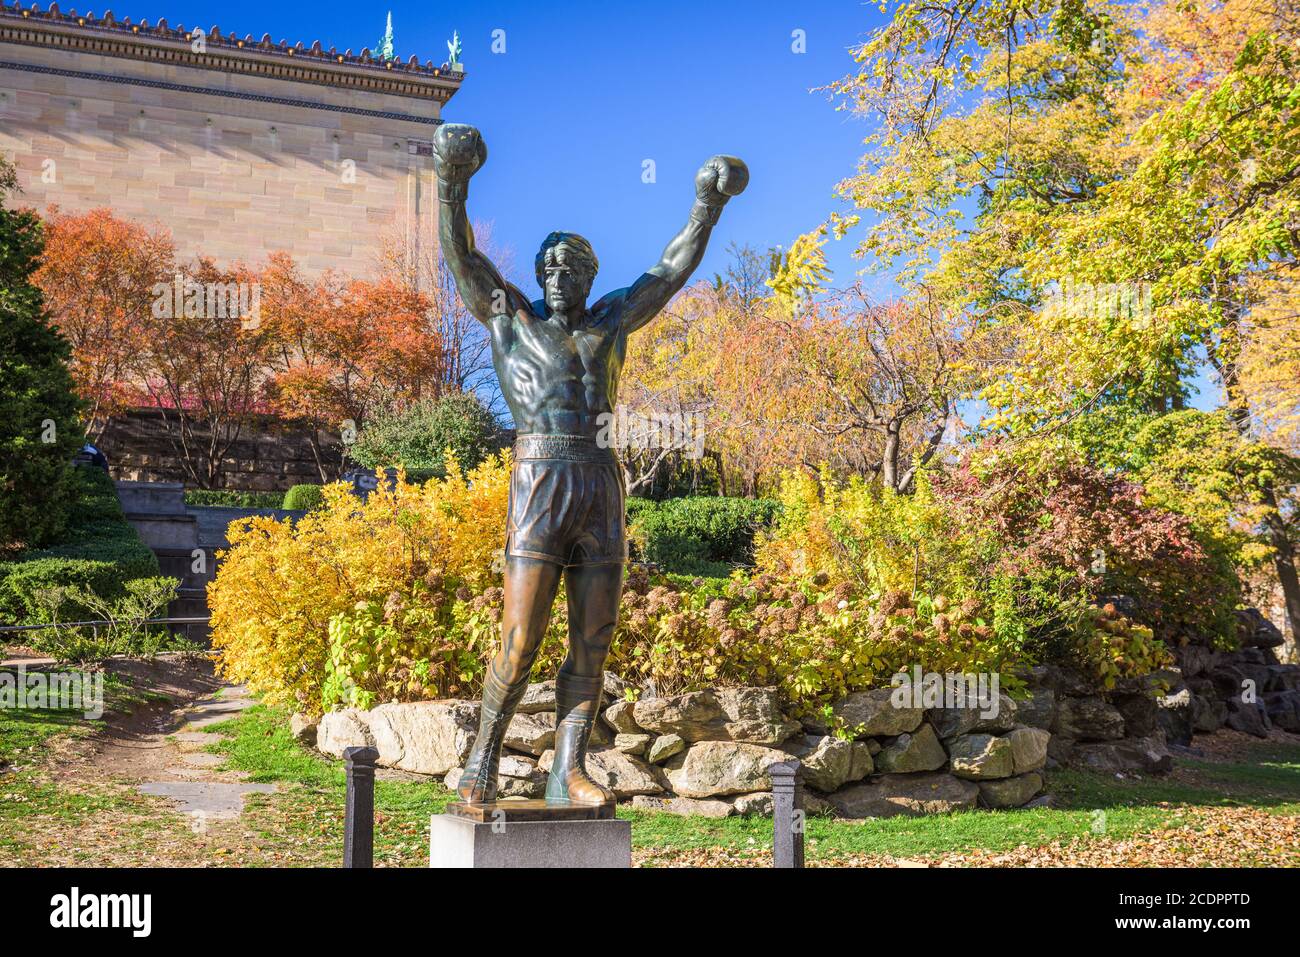 PHILADELPHIE, PENNSYLVANIE - NOVEMBR 16, 2016: La statue de Rocky Balboa pendant l'automne. La statue commémore la série de films Rocky qui a beco Banque D'Images